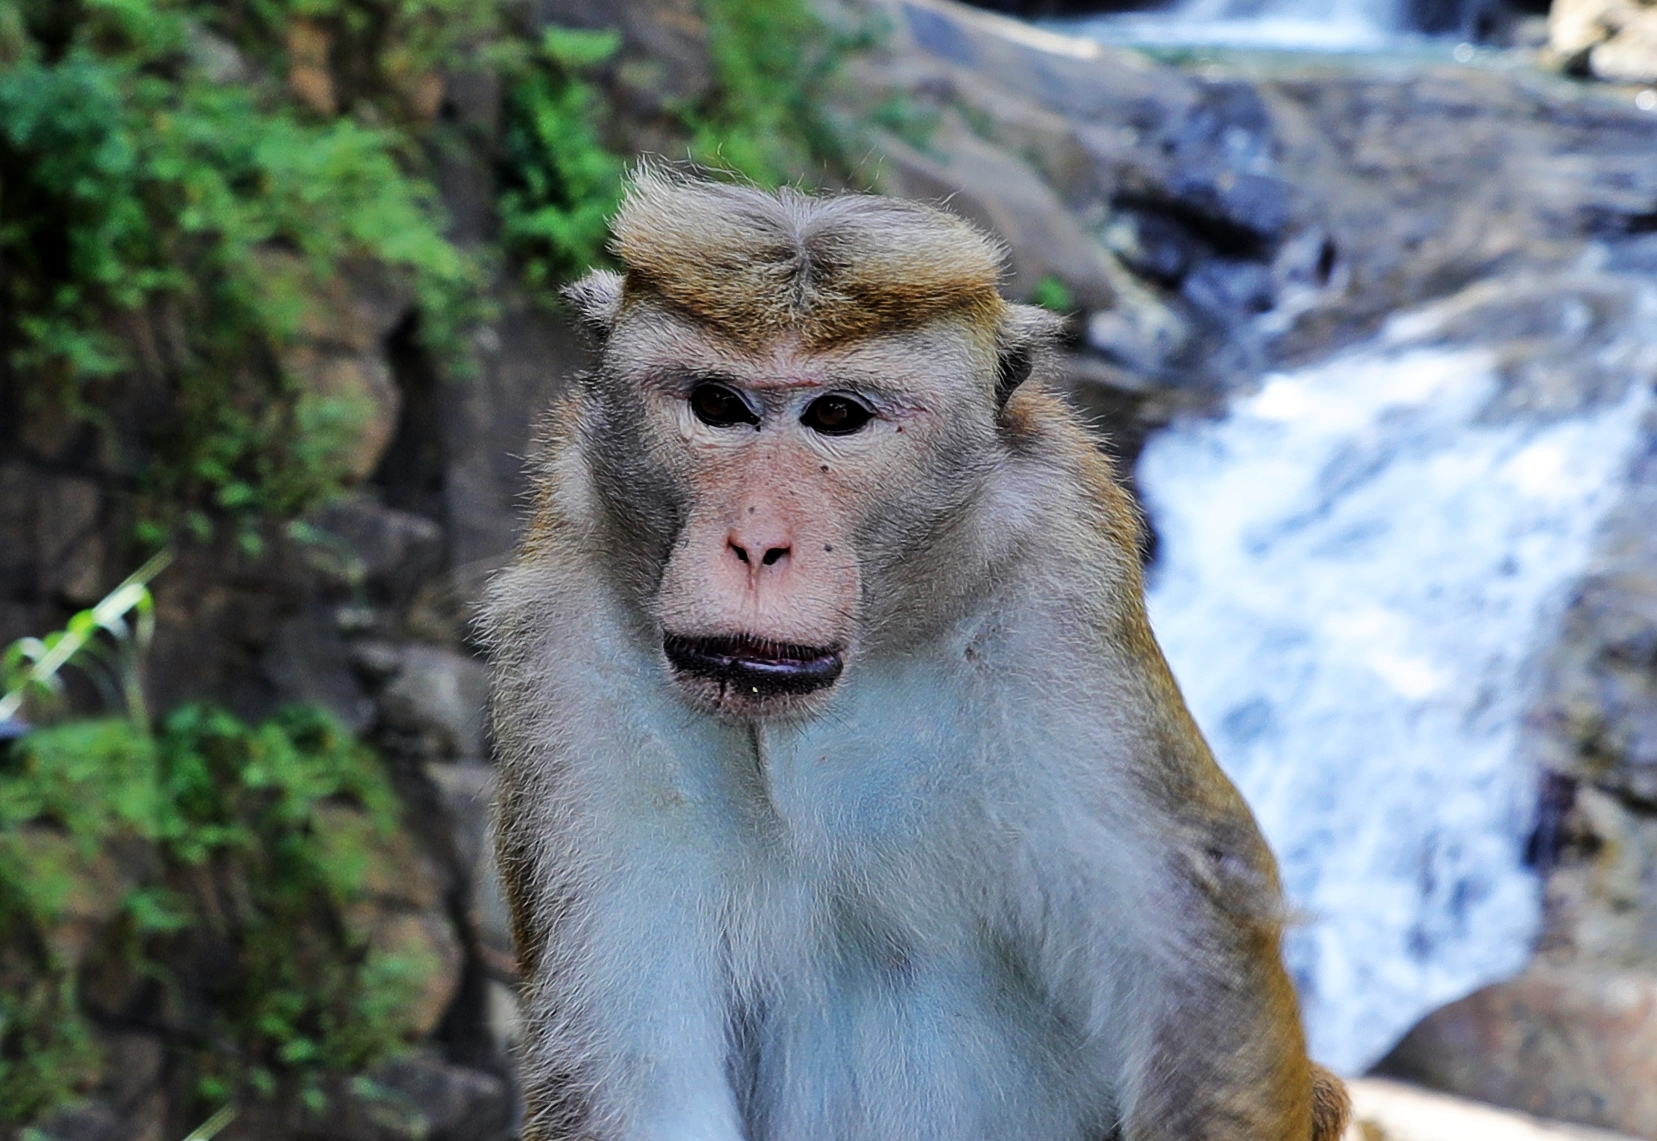 Toque Macaque at Rawana Waterfall